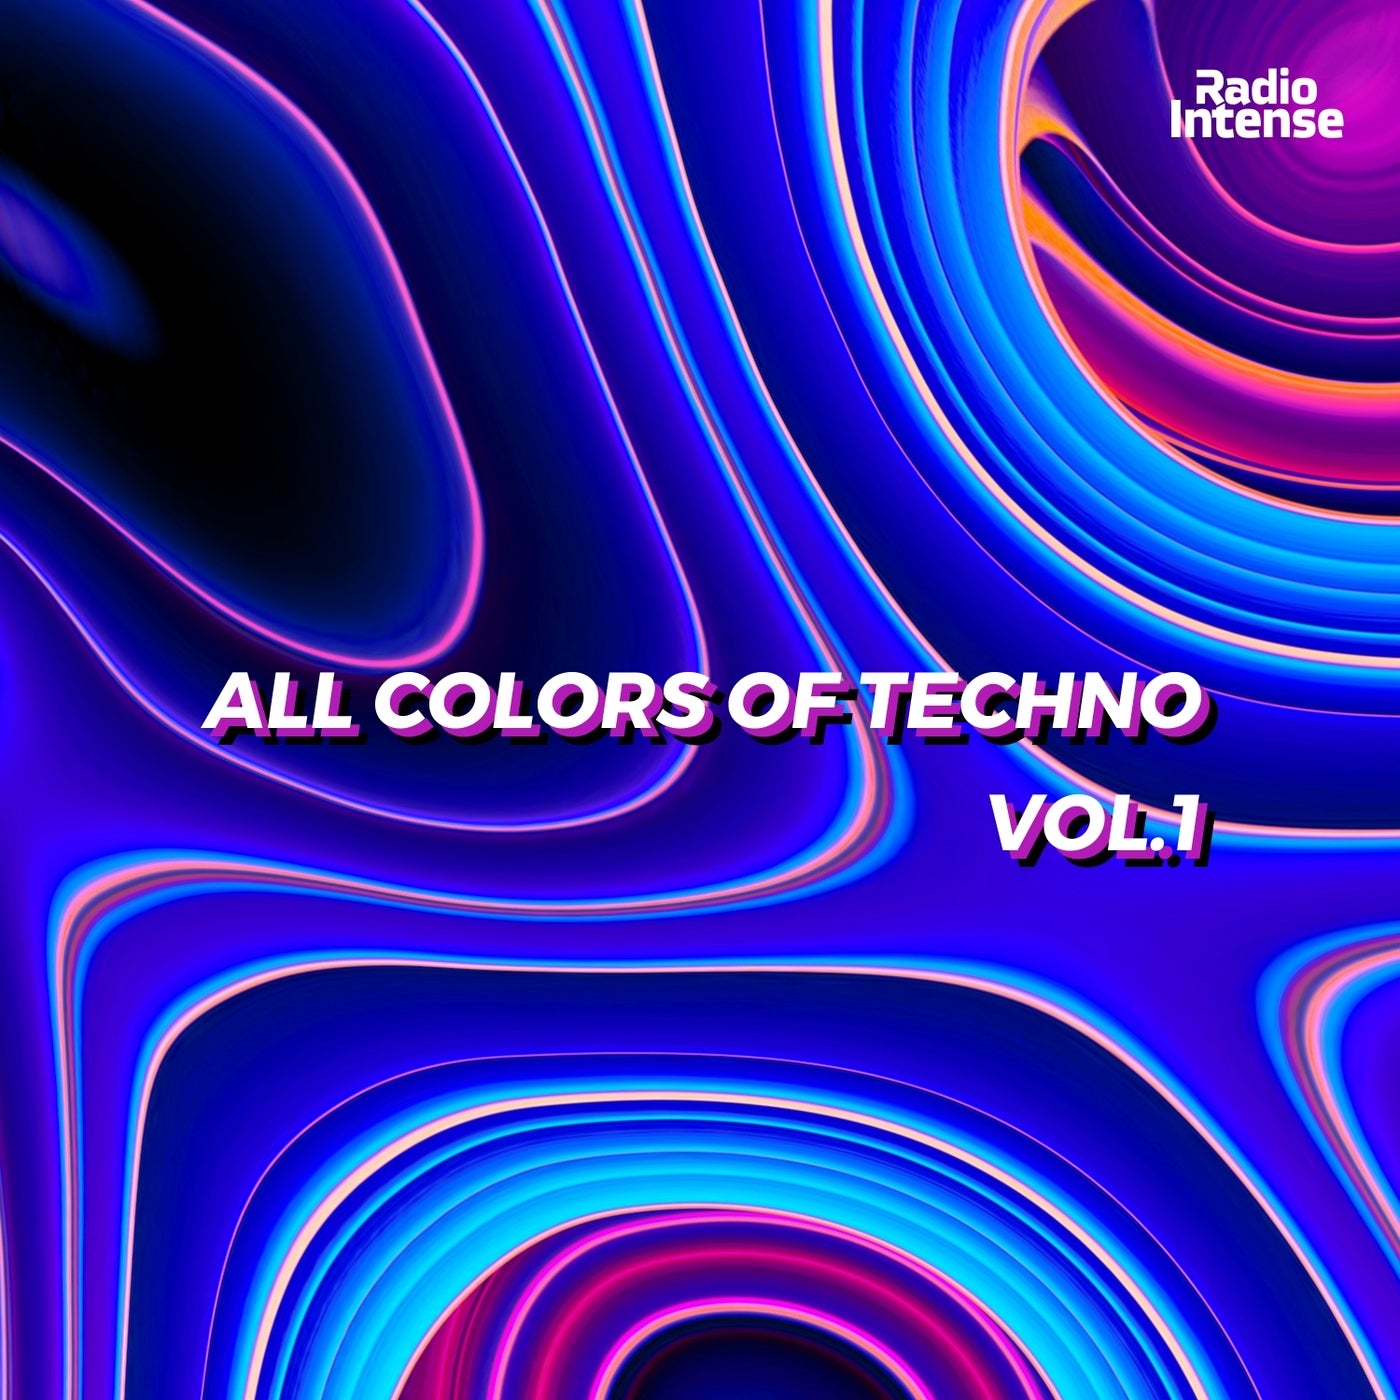 All Colors of Techno Vol.1